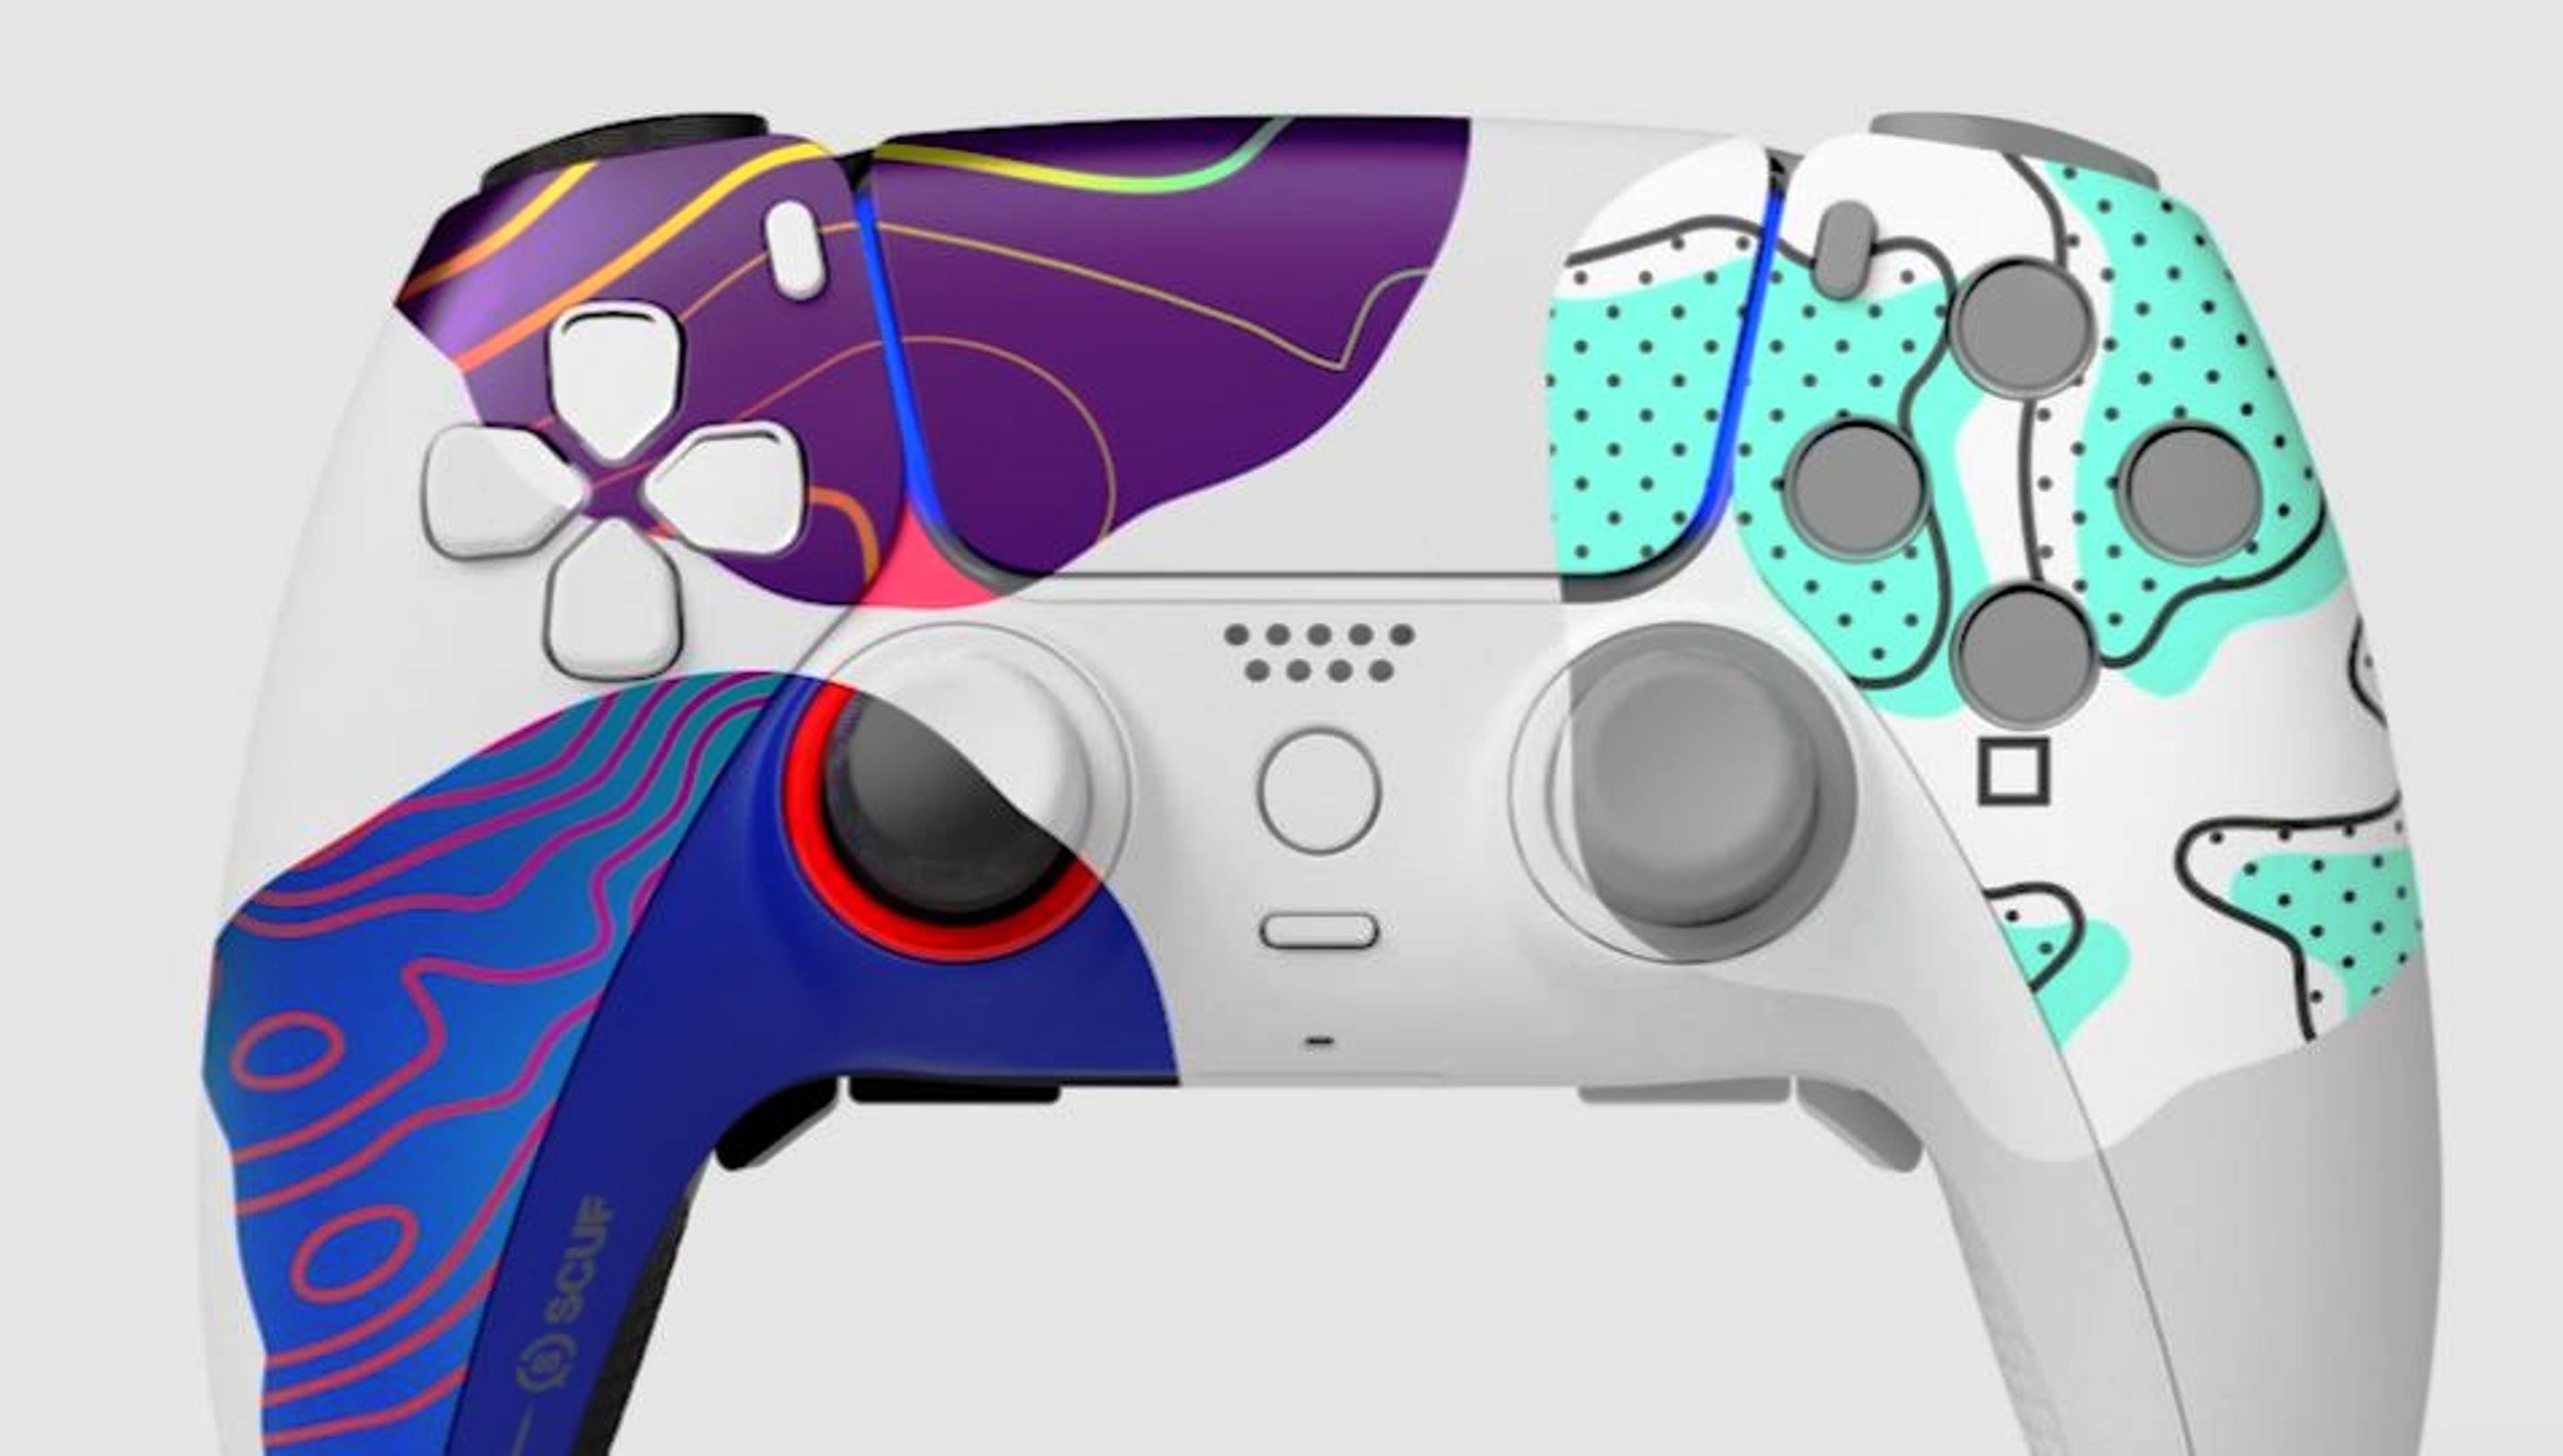 Bilder zu SCUF bringt mit dem Reflex ihren ersten PlayStation 5 Controller und er kann euch über 400 Euro kosten